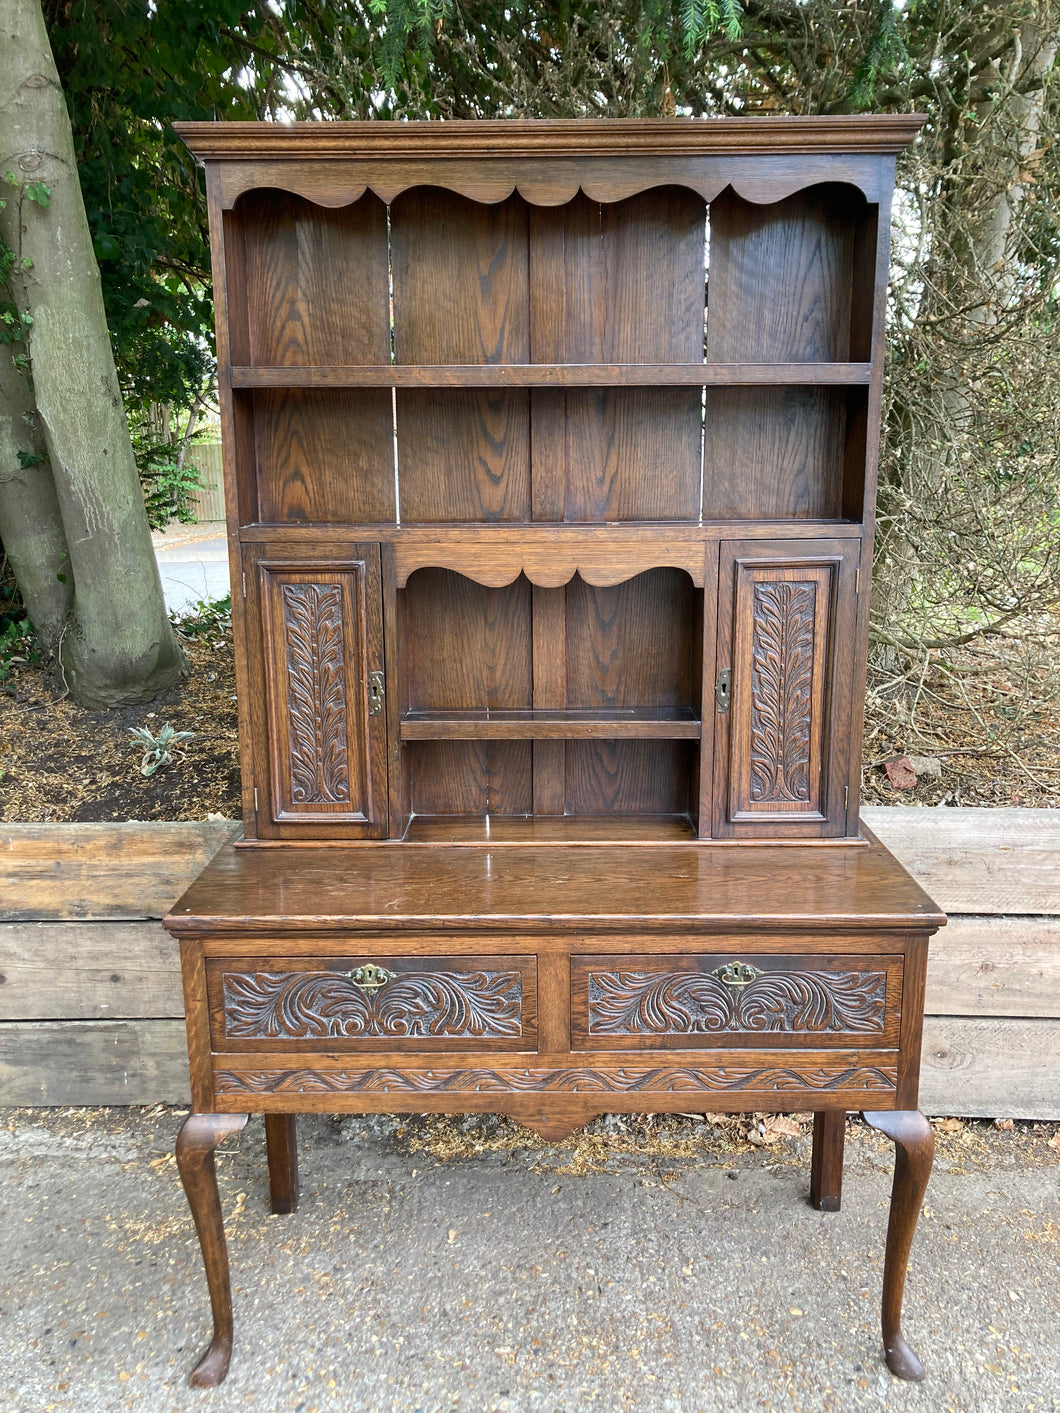 Antique Oak Welsh Dresser With Carving Details